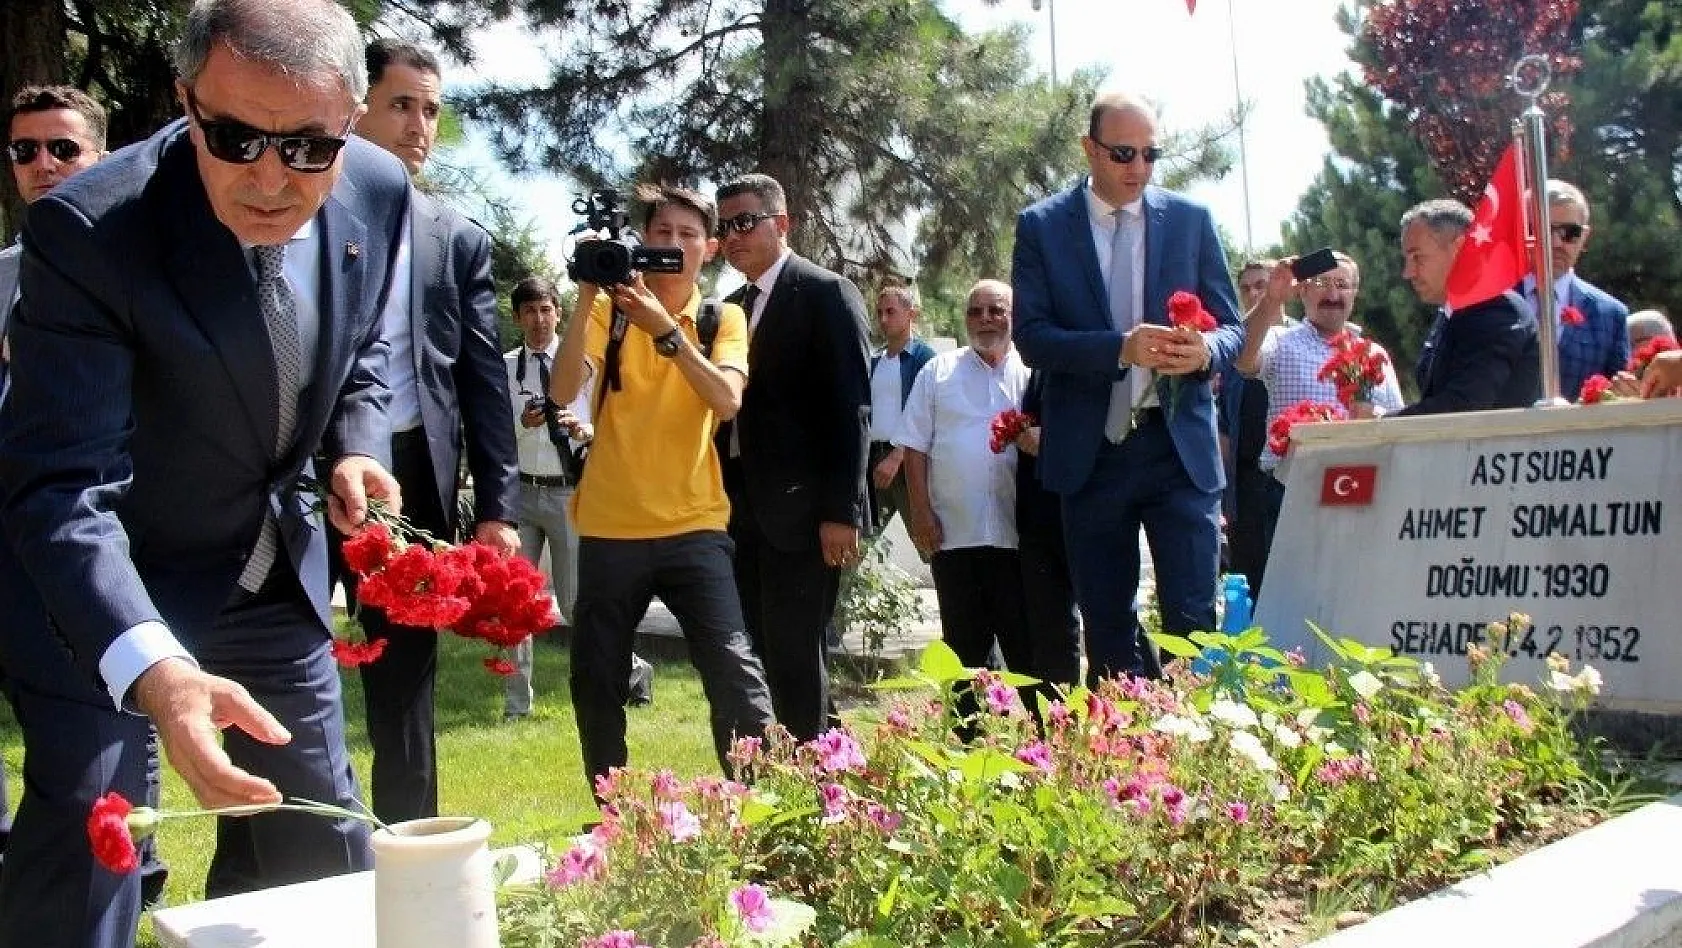 Milli Savunma Bakanı Akar Kayseri'de hava şehitliğini ziyaret etti
